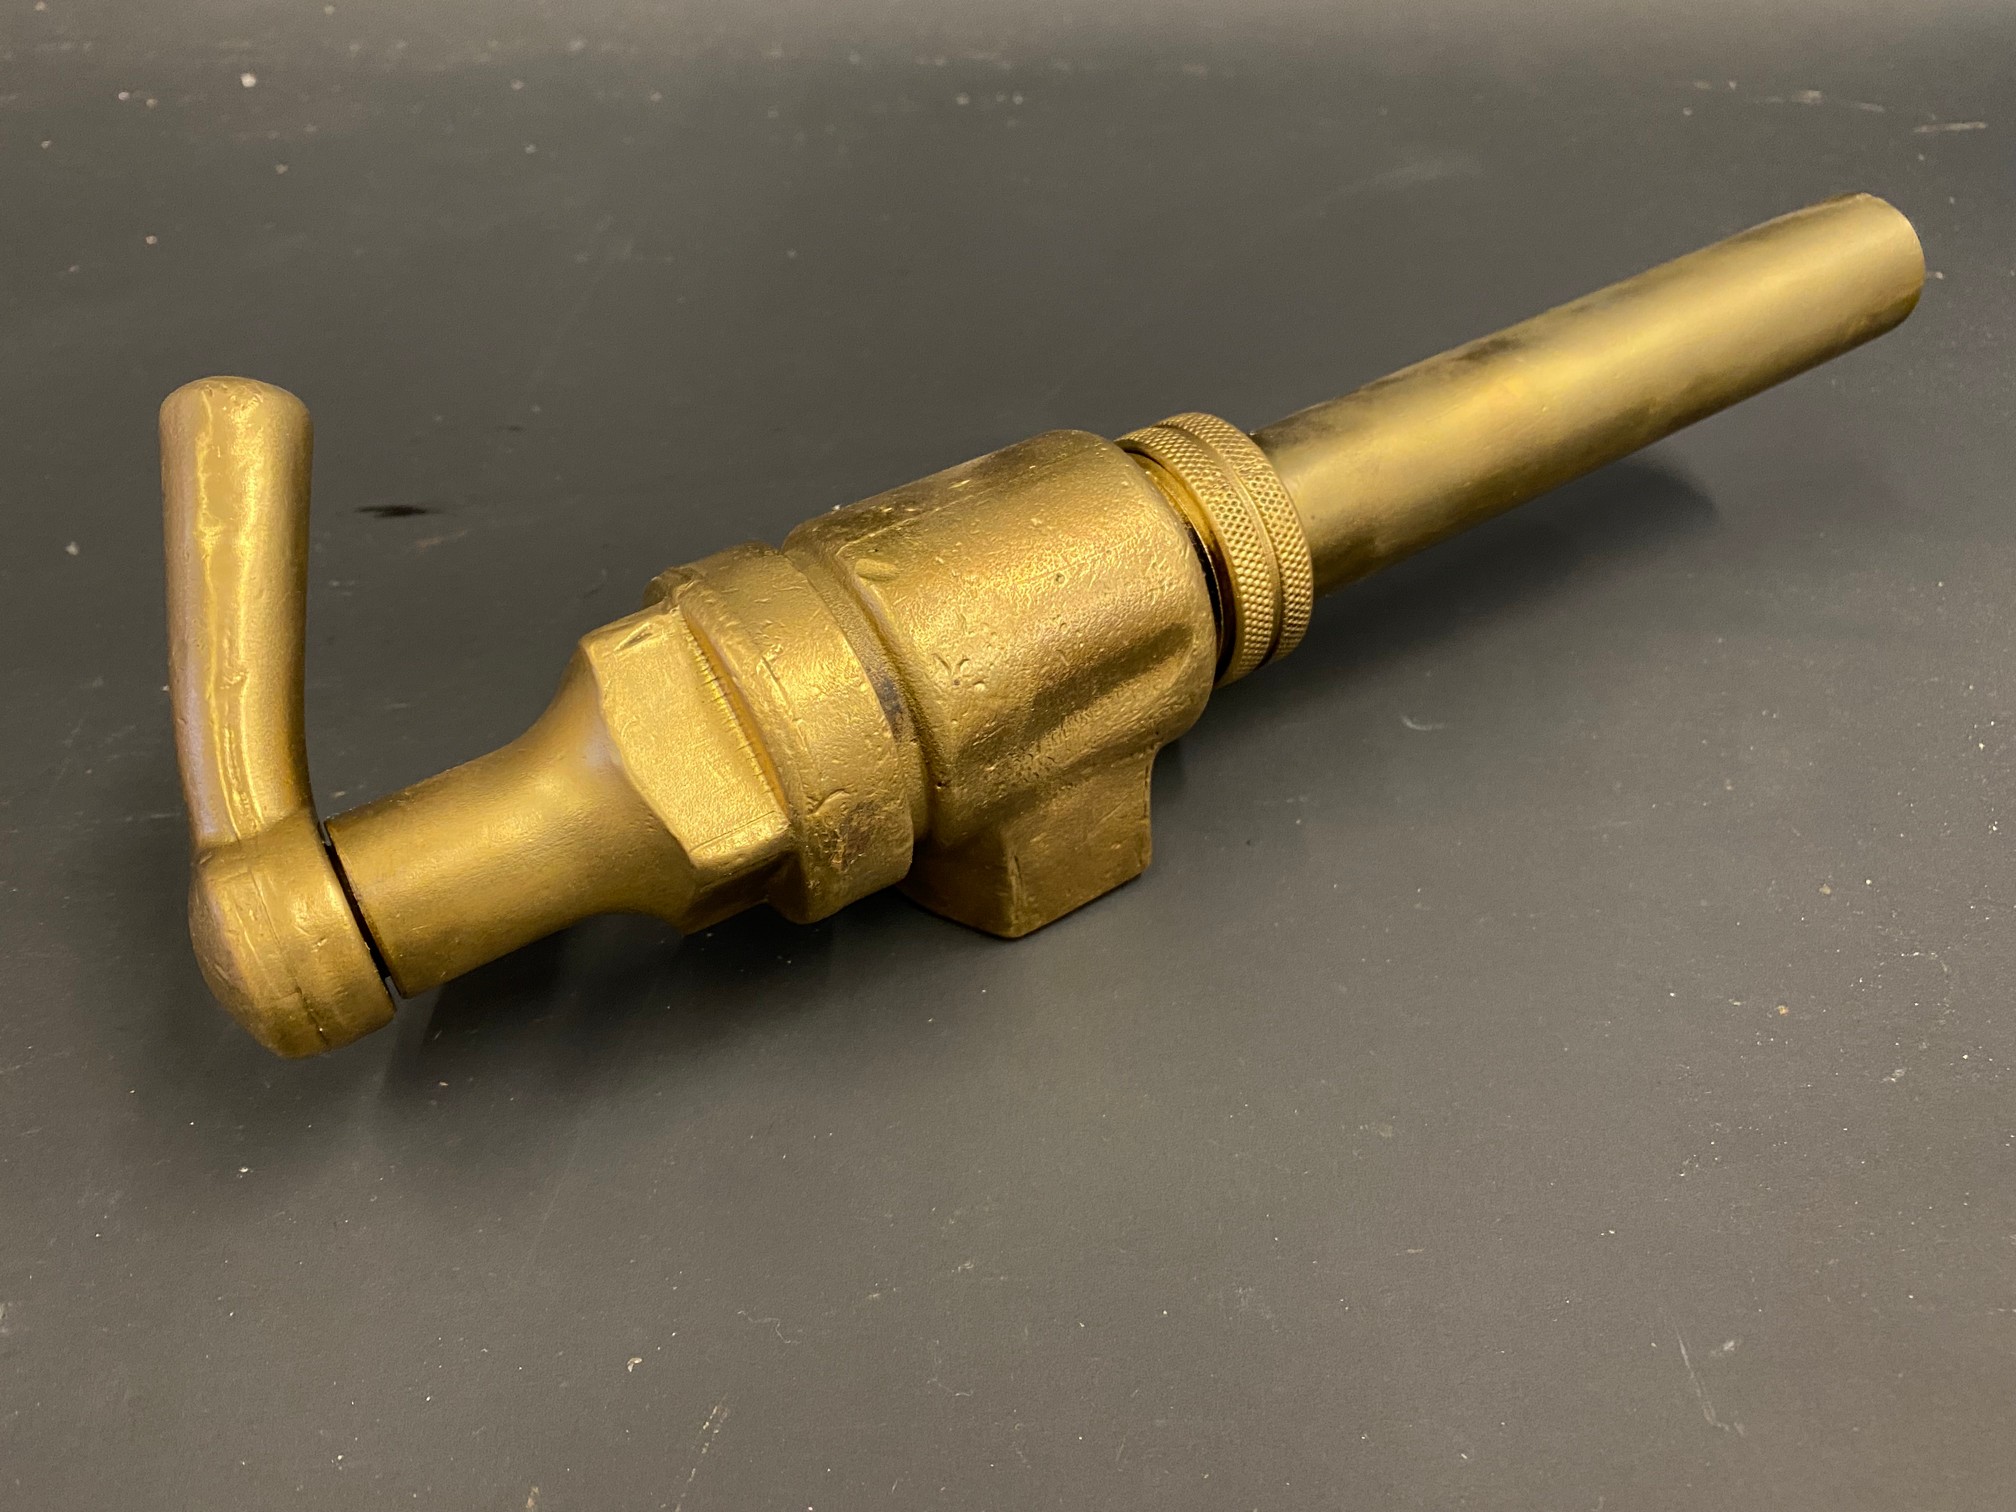 A bronze petrol pump trigger nozzle. - Image 3 of 3